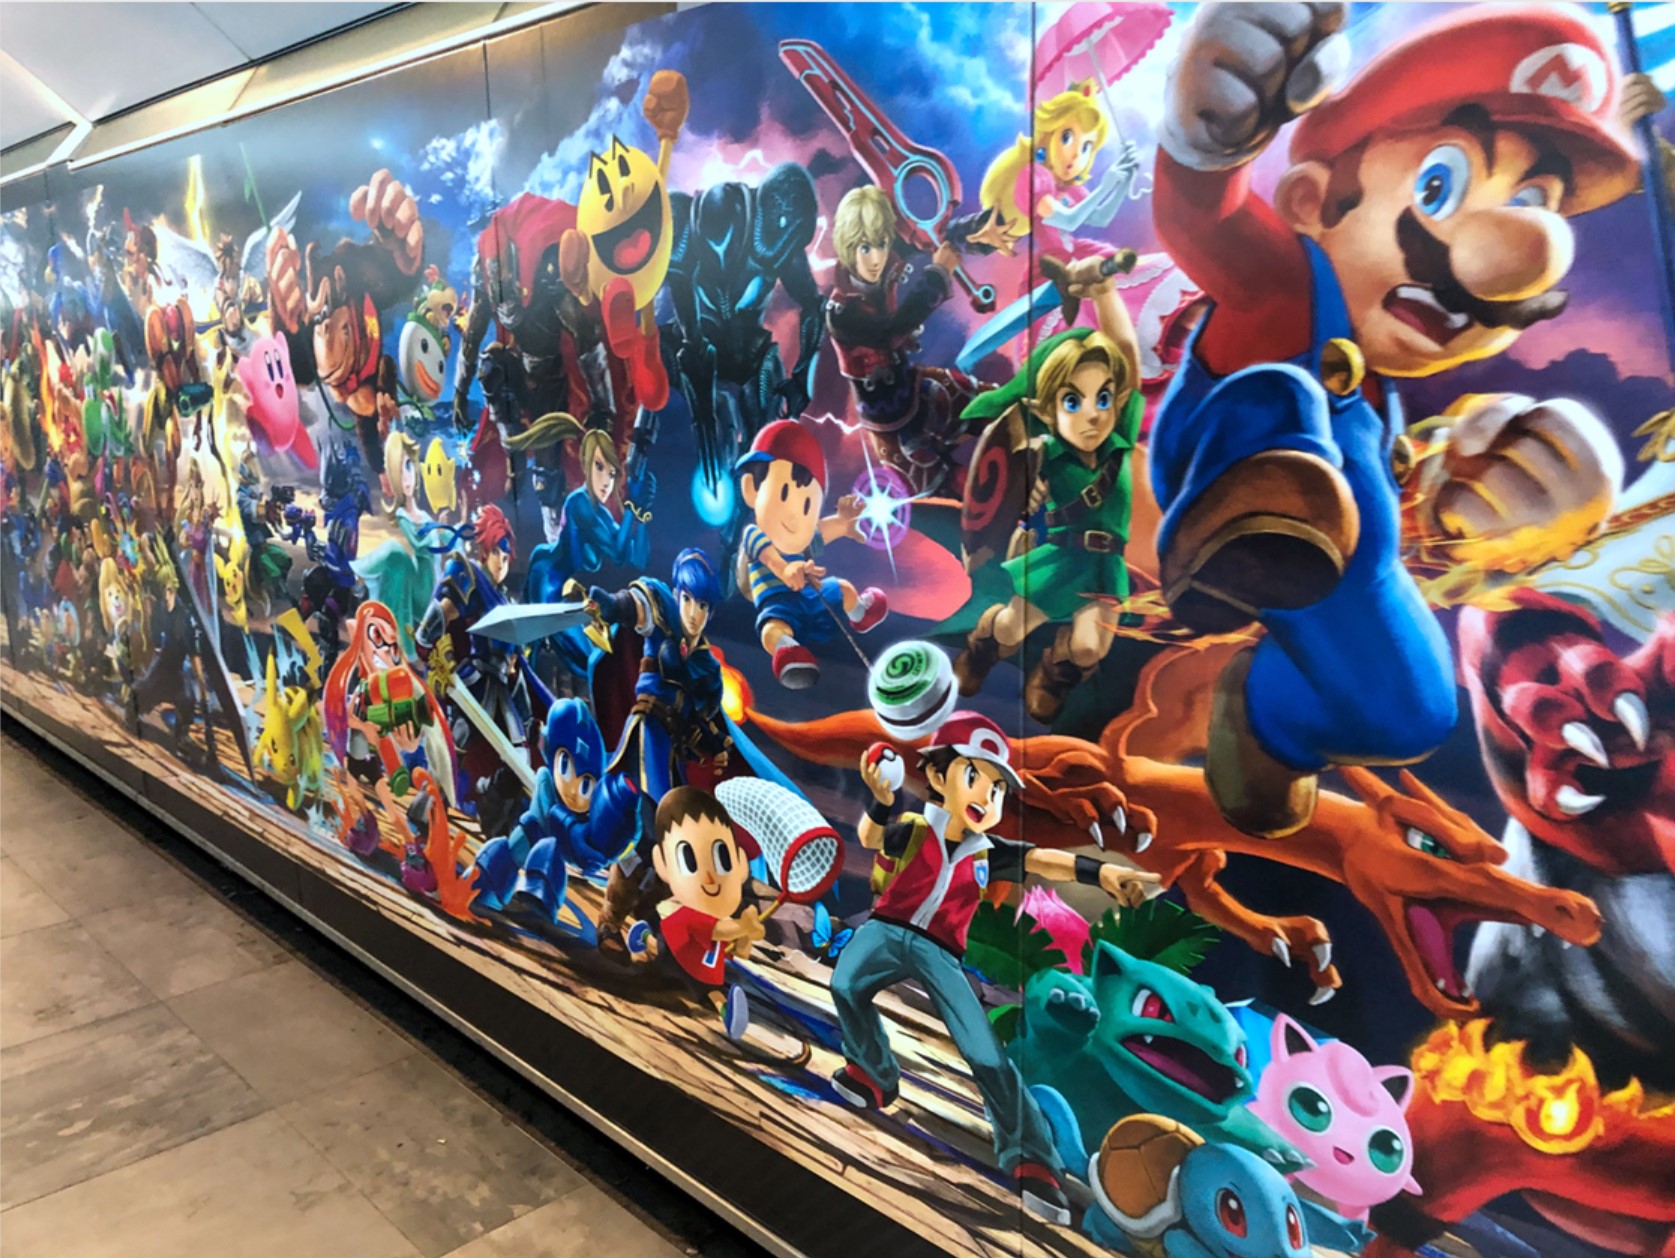 《任天堂明星大乱斗特别版》即将发售 巴黎地铁站贴满宣传海报